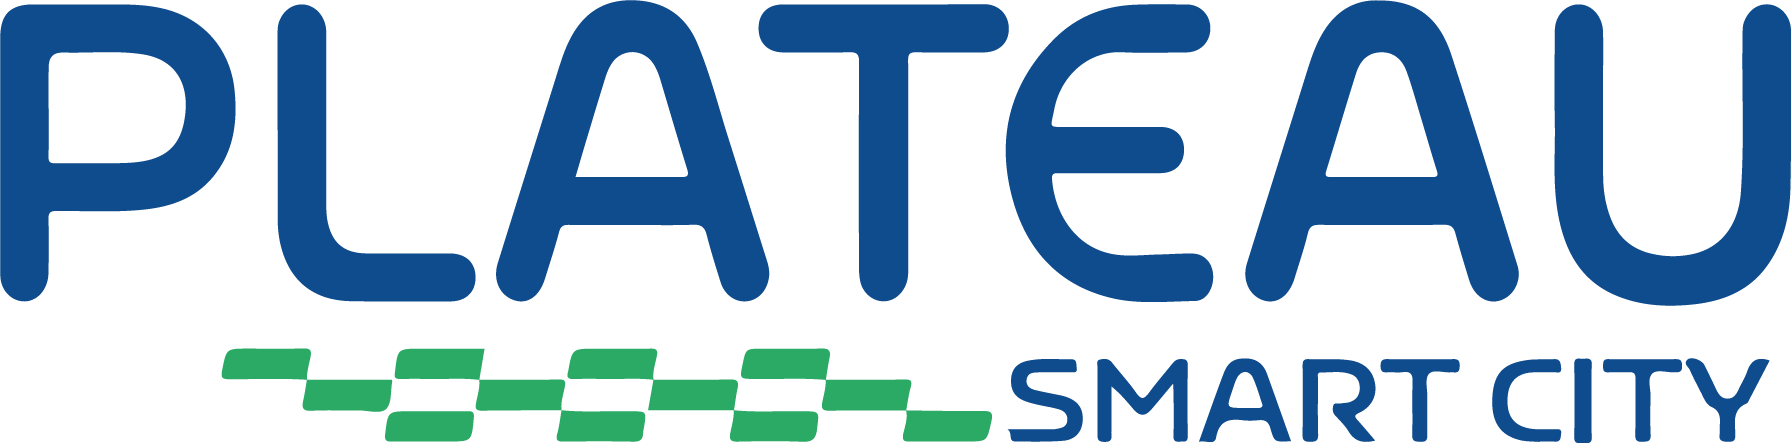 Logo Plateau Smartcity